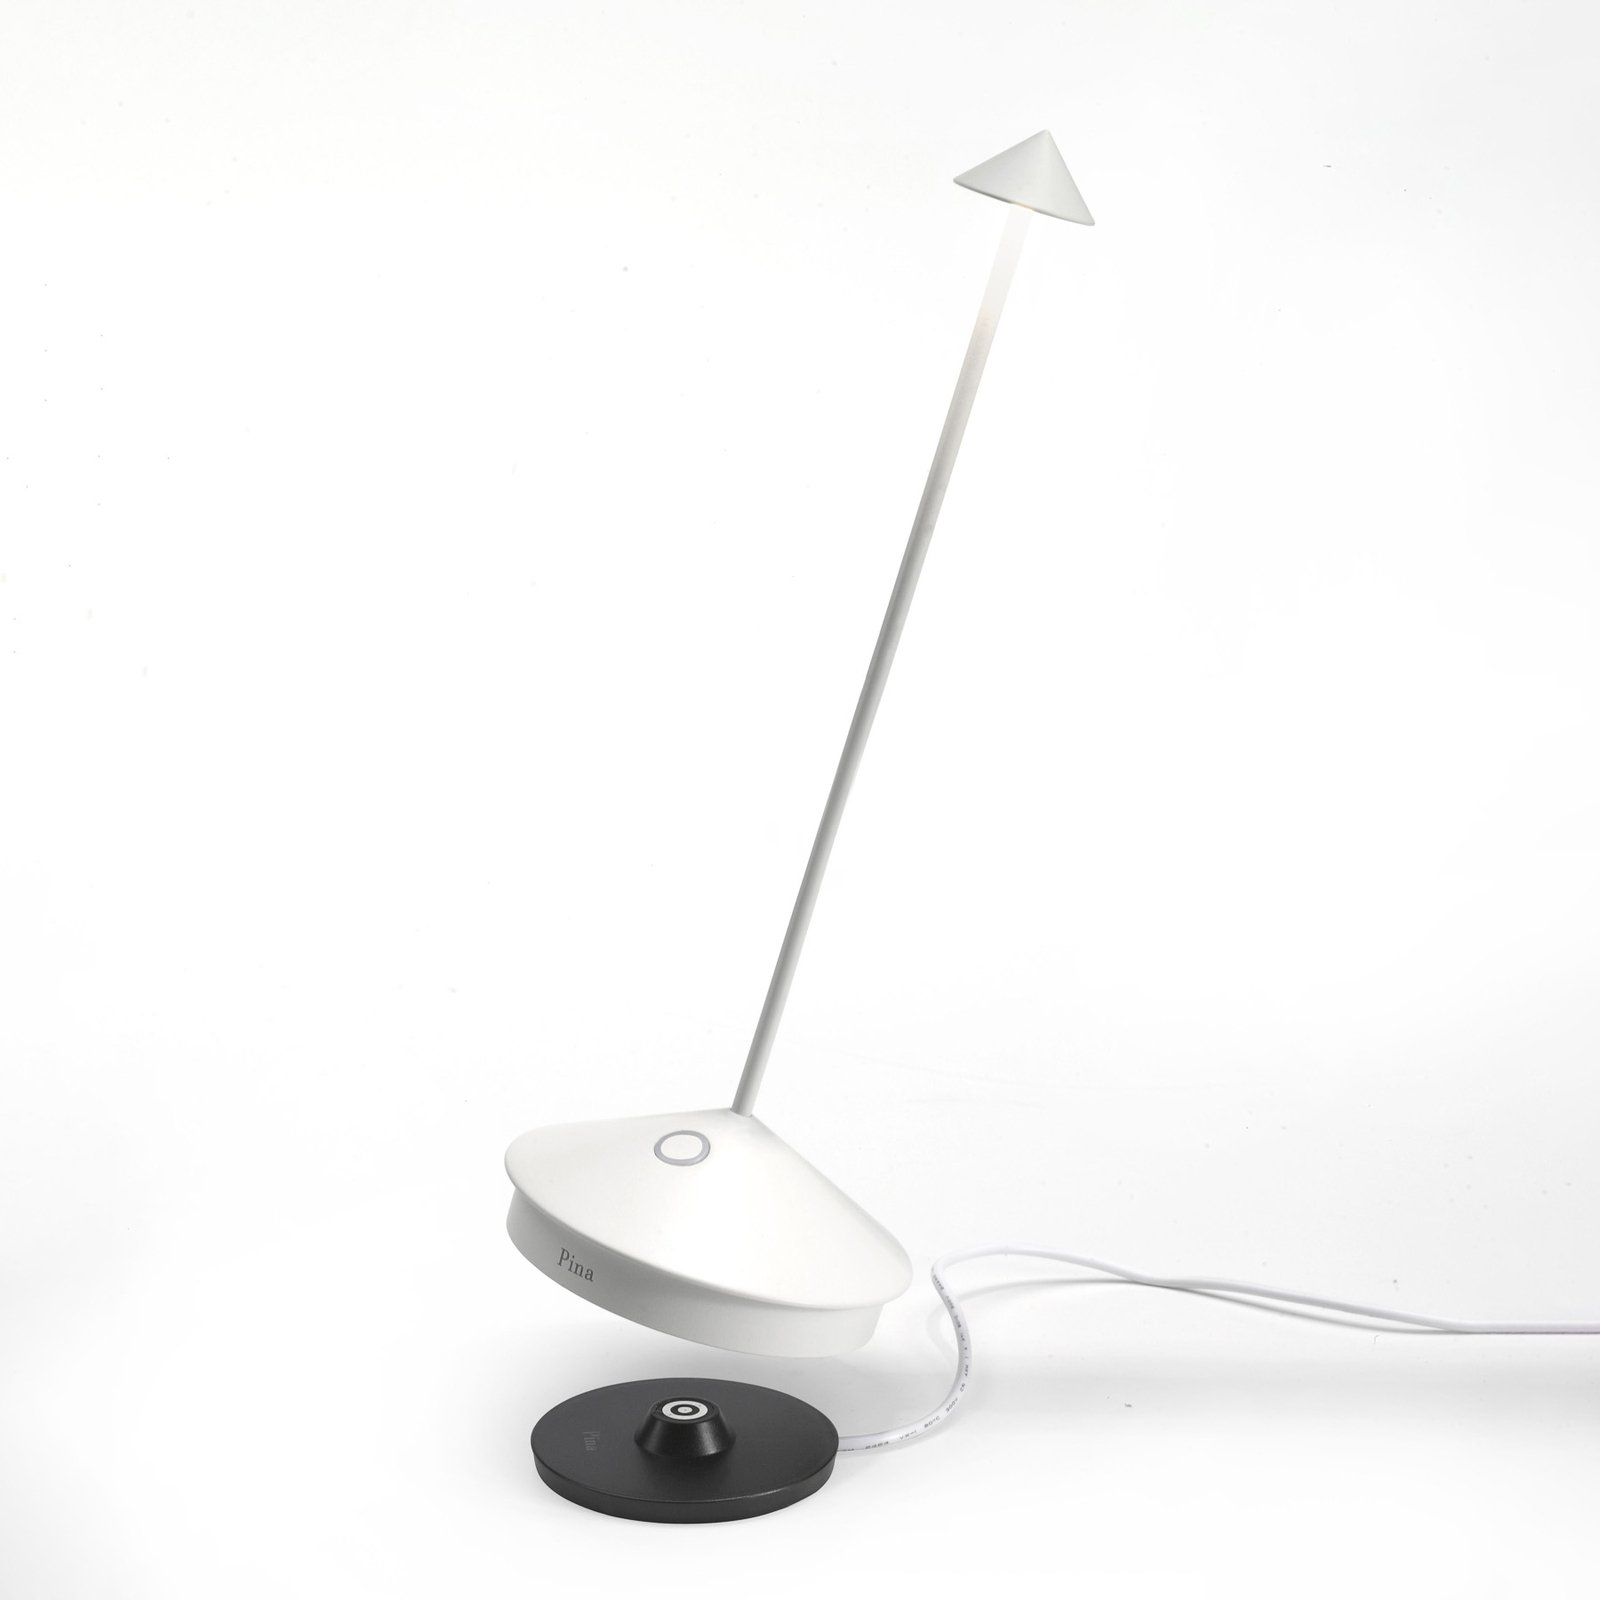 Zafferano Pina 3K dobíjecí stolní lampa IP54 bílá